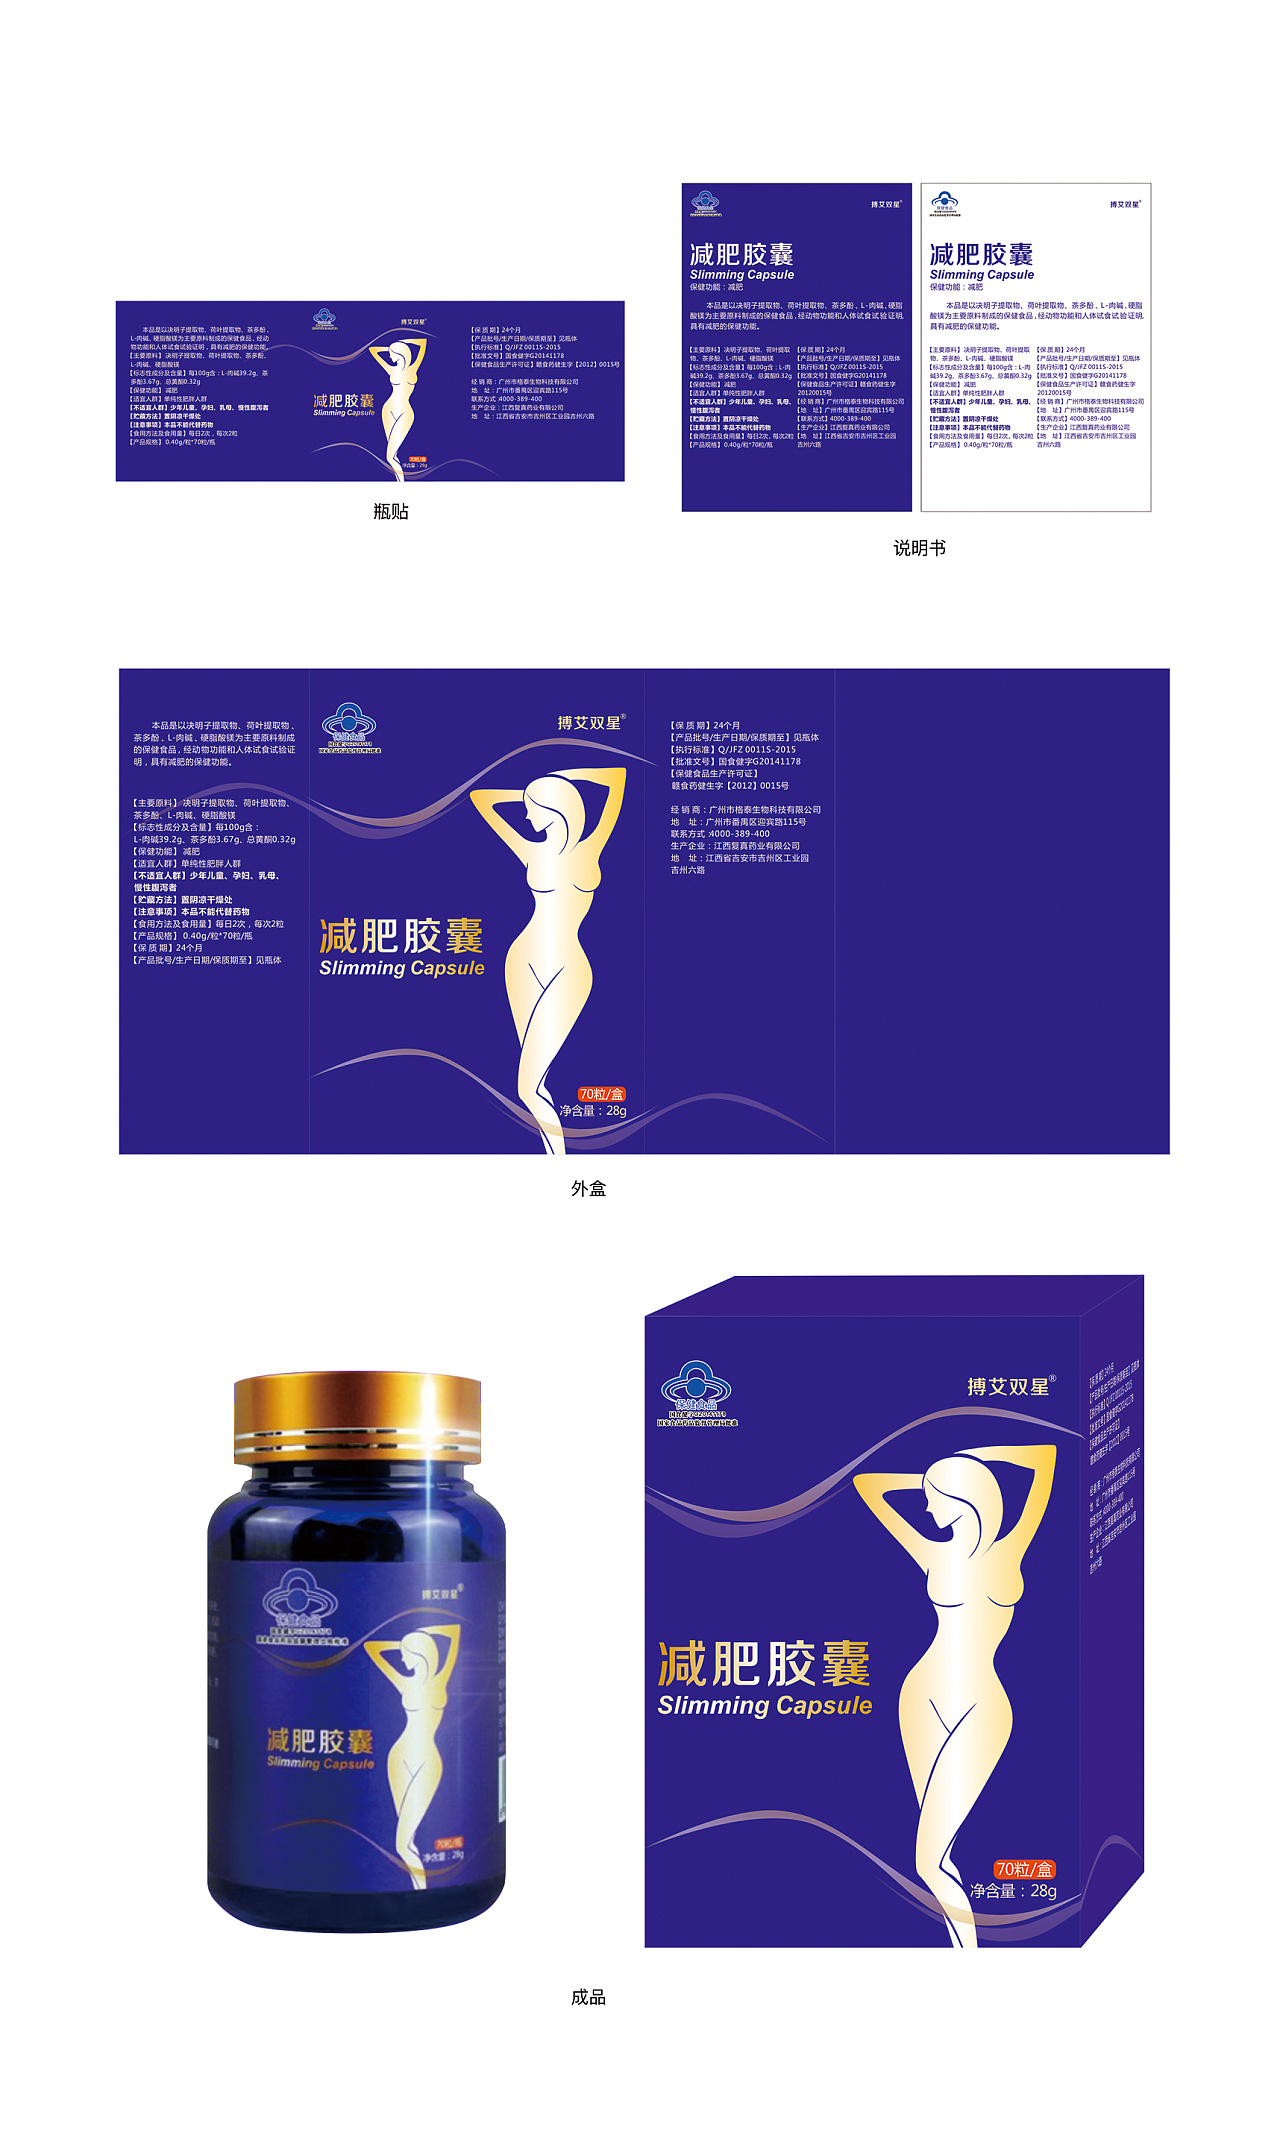 北京昊泽生物科技公司保健品包装设计案例图片欣赏-西风东韵设计